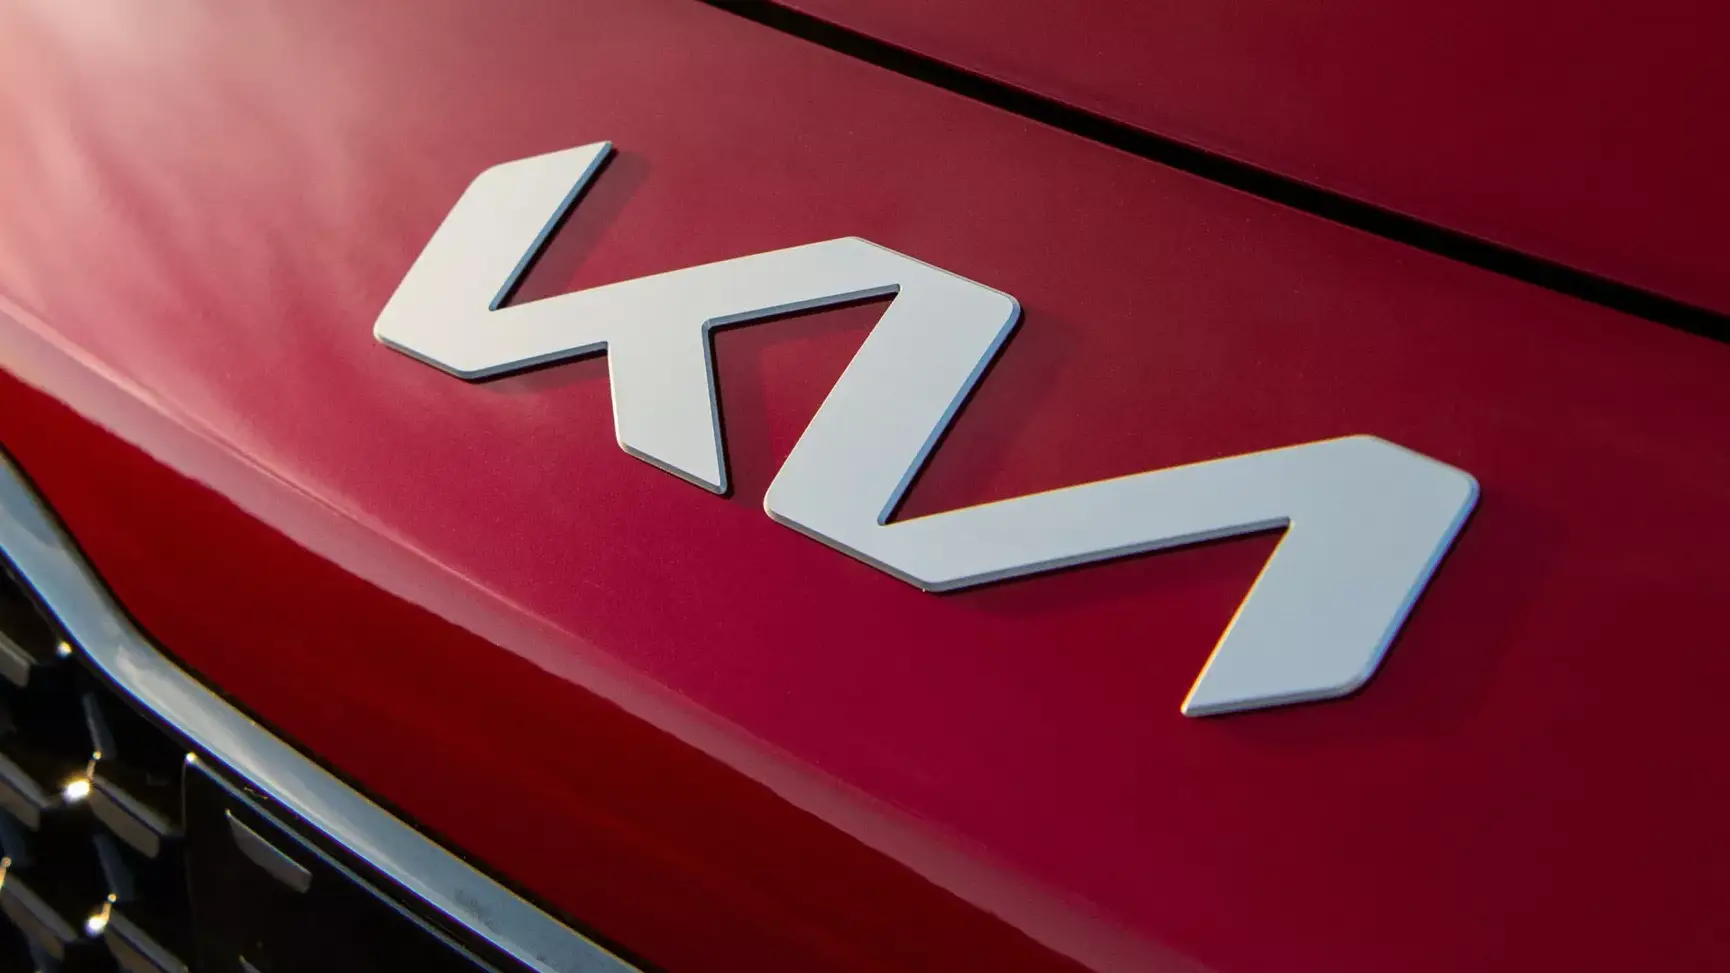 "Lột xác" thiết kế lẫn logo, logo KIA khiến khách hàng nhầm lẫn là hãng xe mới tên "KN"